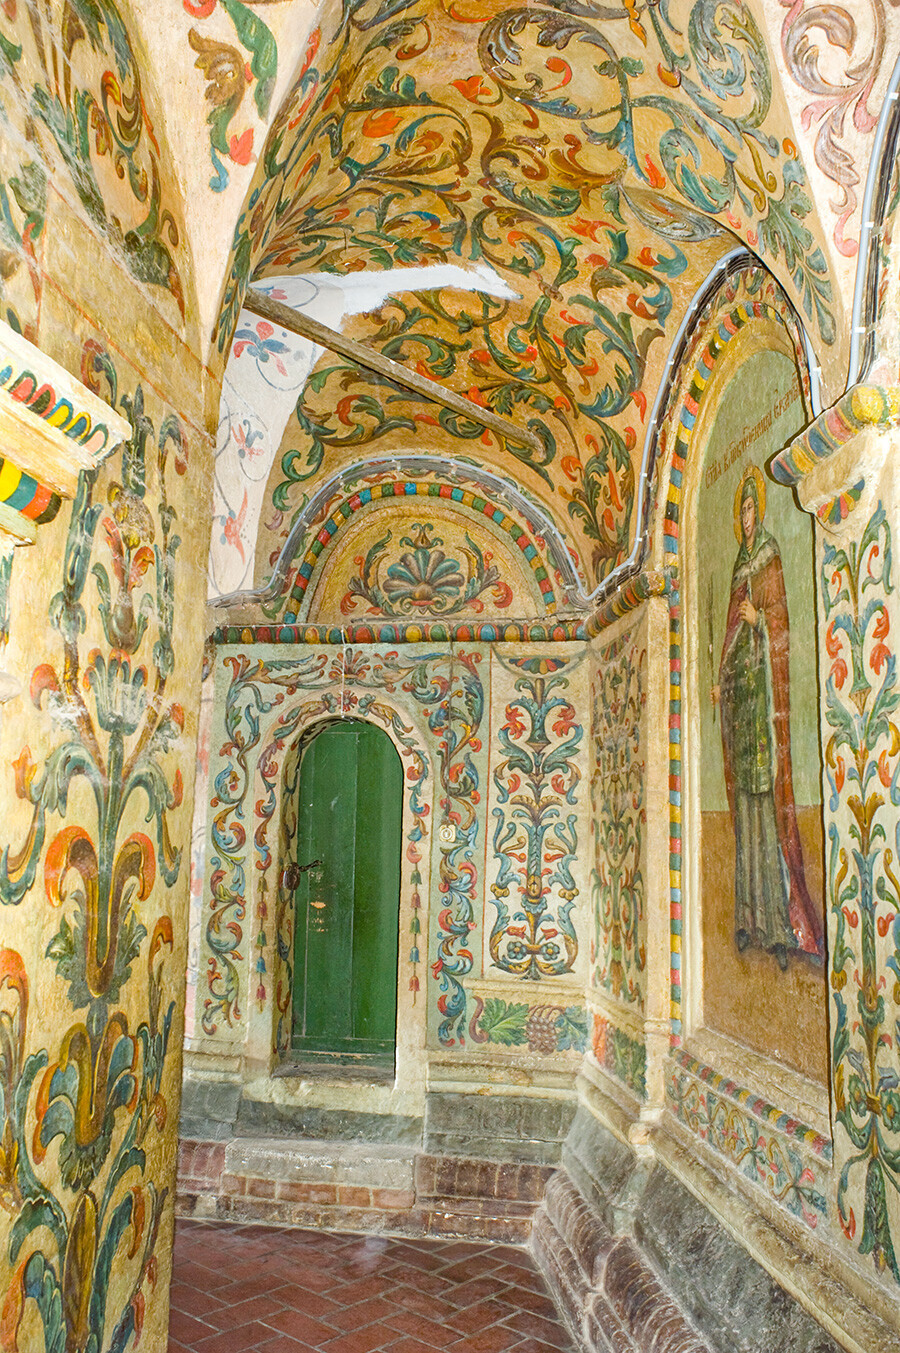 Katedrala Vasilija Blaženega, notranjost. Južni galerijski prehod s stenskimi poslikavami iz 18. stoletja. Levo: podoba sv. Katarine. 2. junij 2012.
